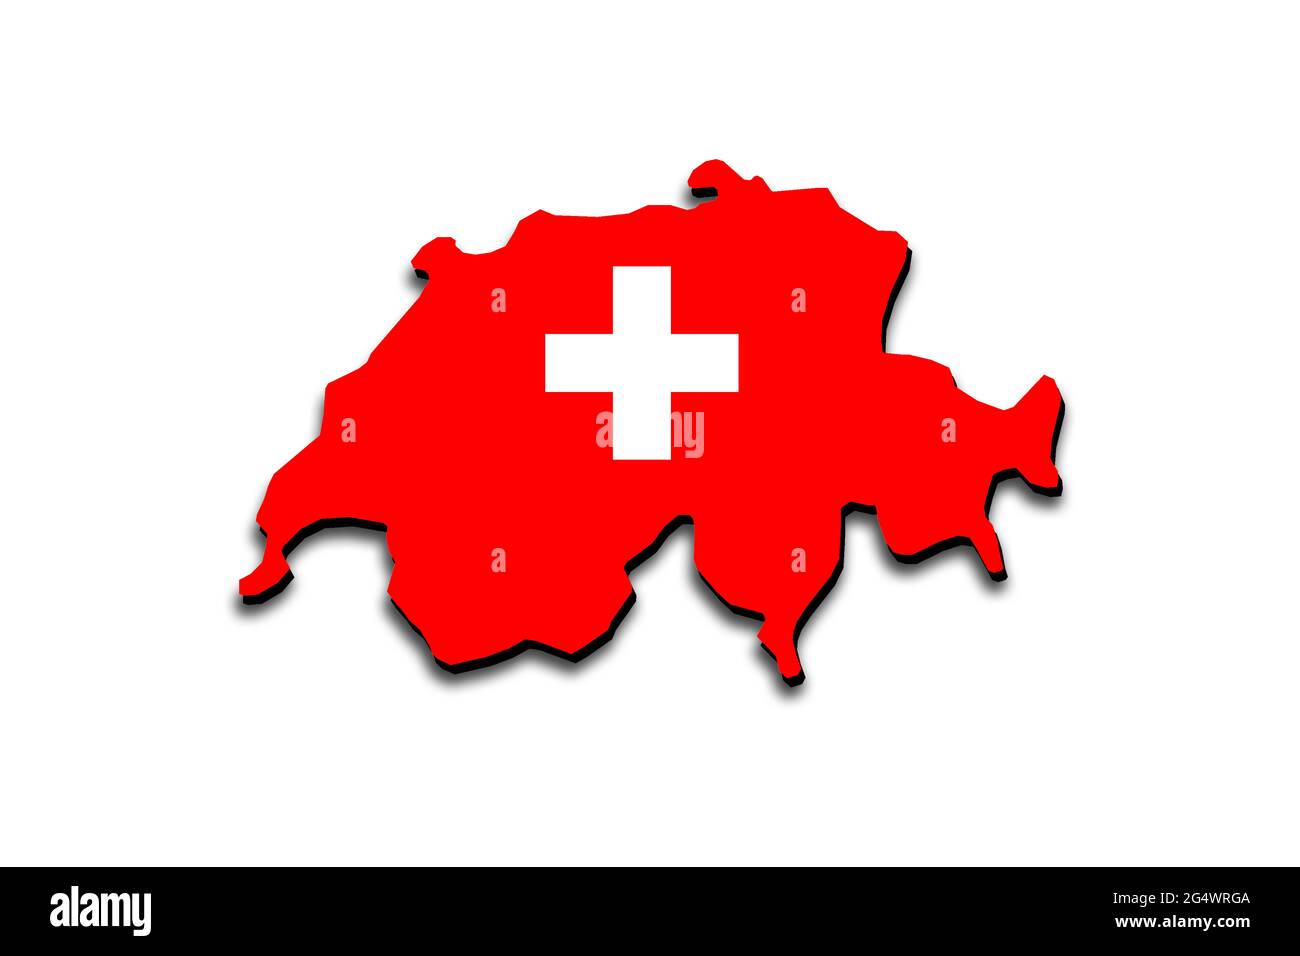 Übersichtskarte der Schweiz mit überlagerter Nationalflagge. 3D-Grafiken, die einen Schatten auf den weißen Hintergrund werfen Stockfoto